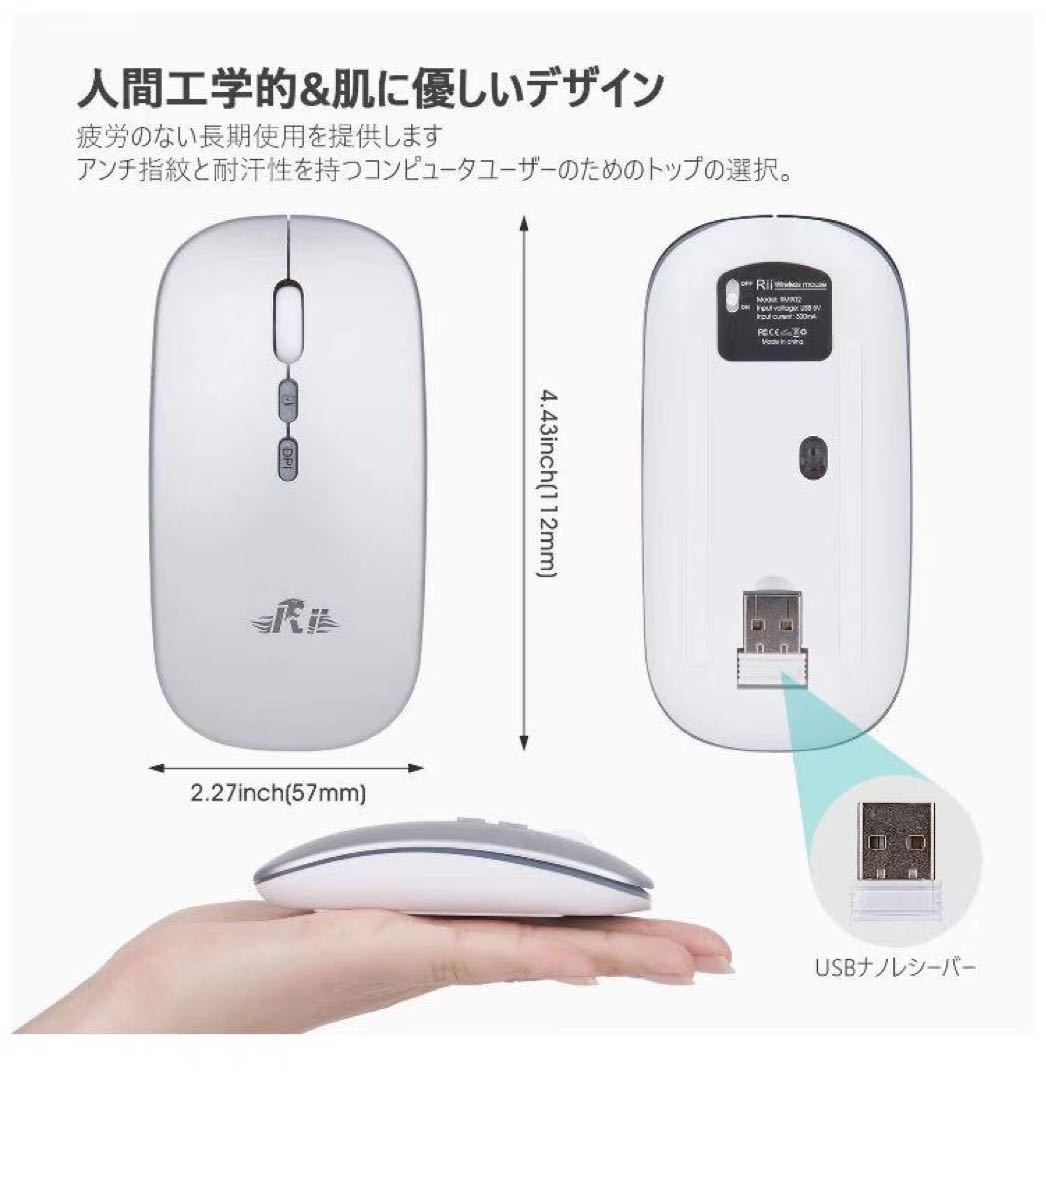 ワイヤレスマウス 静音超薄型 充電式 長時間無線マウス軽量持ち運び便利 